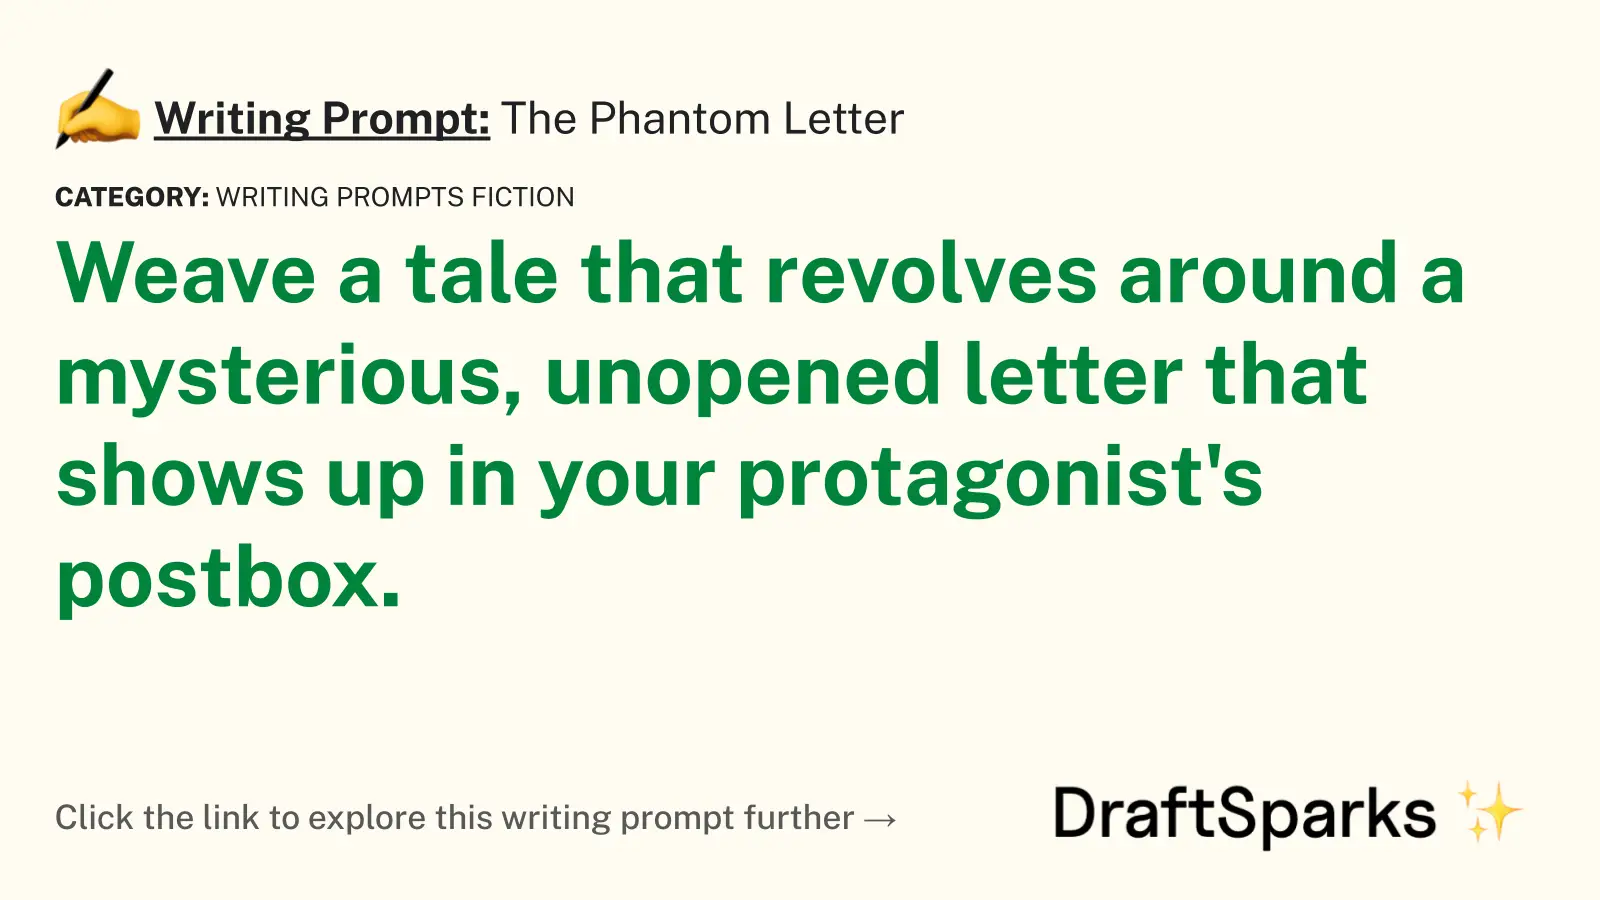 The Phantom Letter